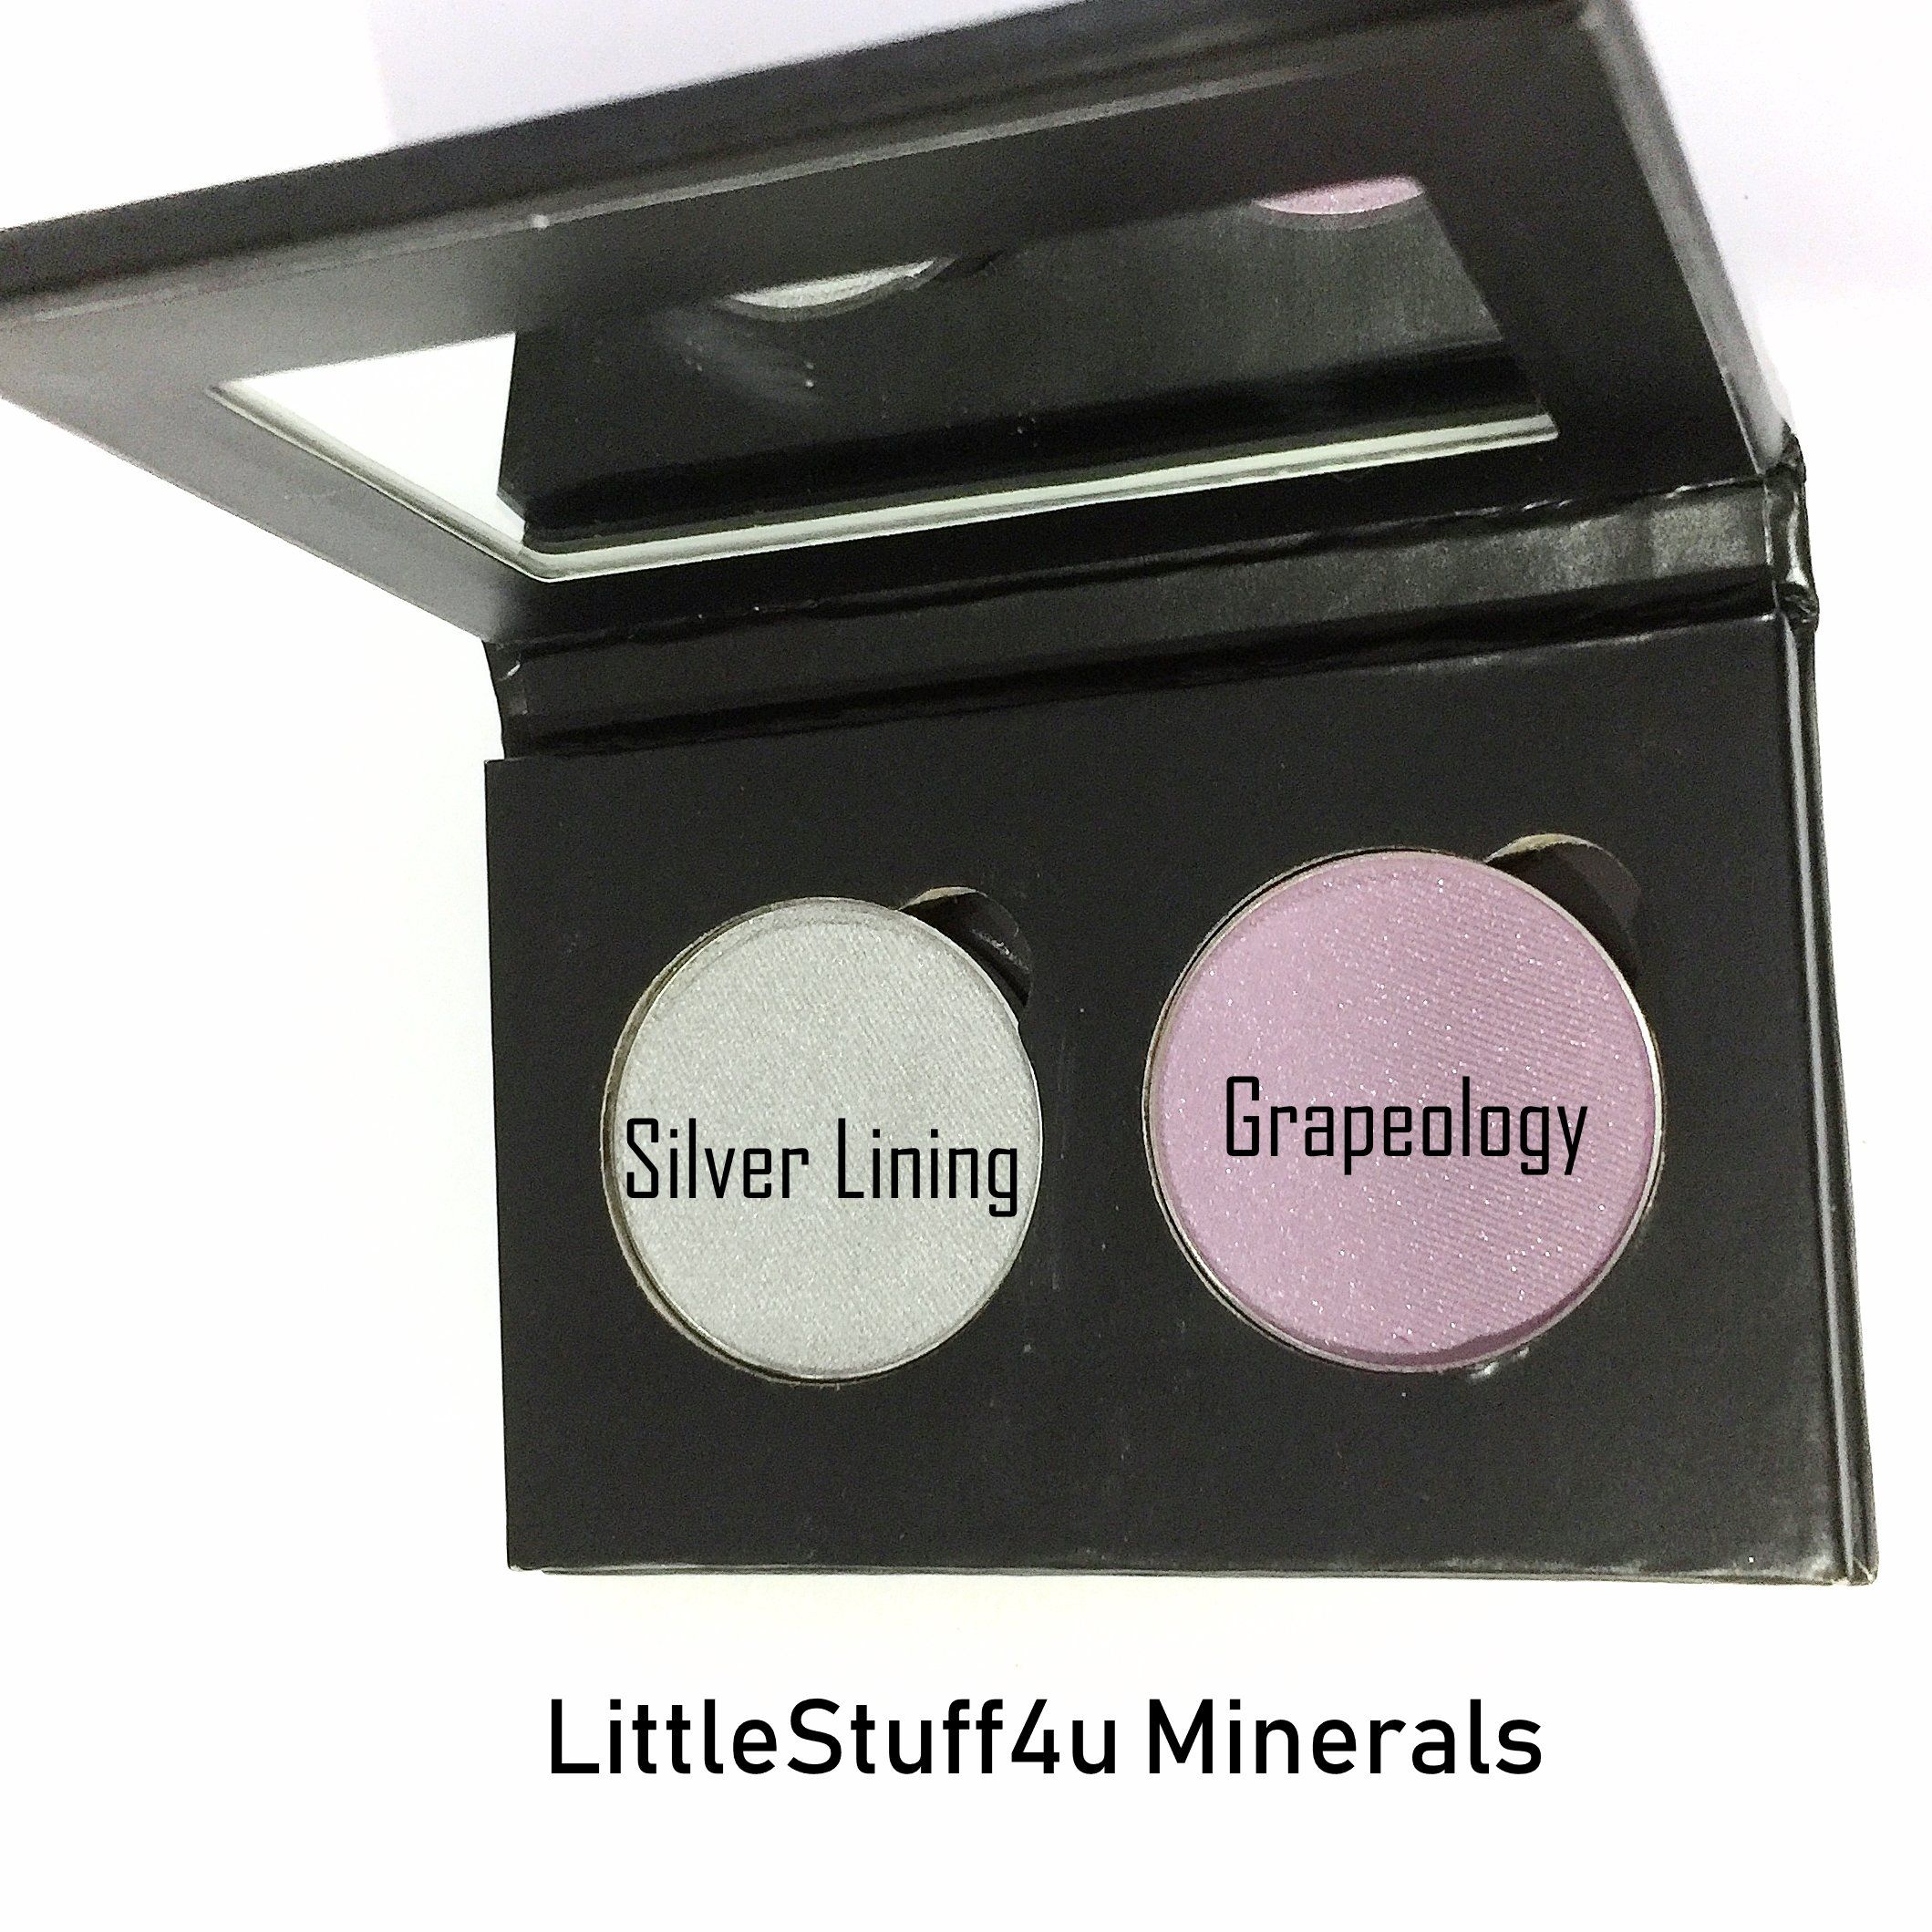 Pressed Eye Shadow Pan Refill - LittleStuff4u Minerals